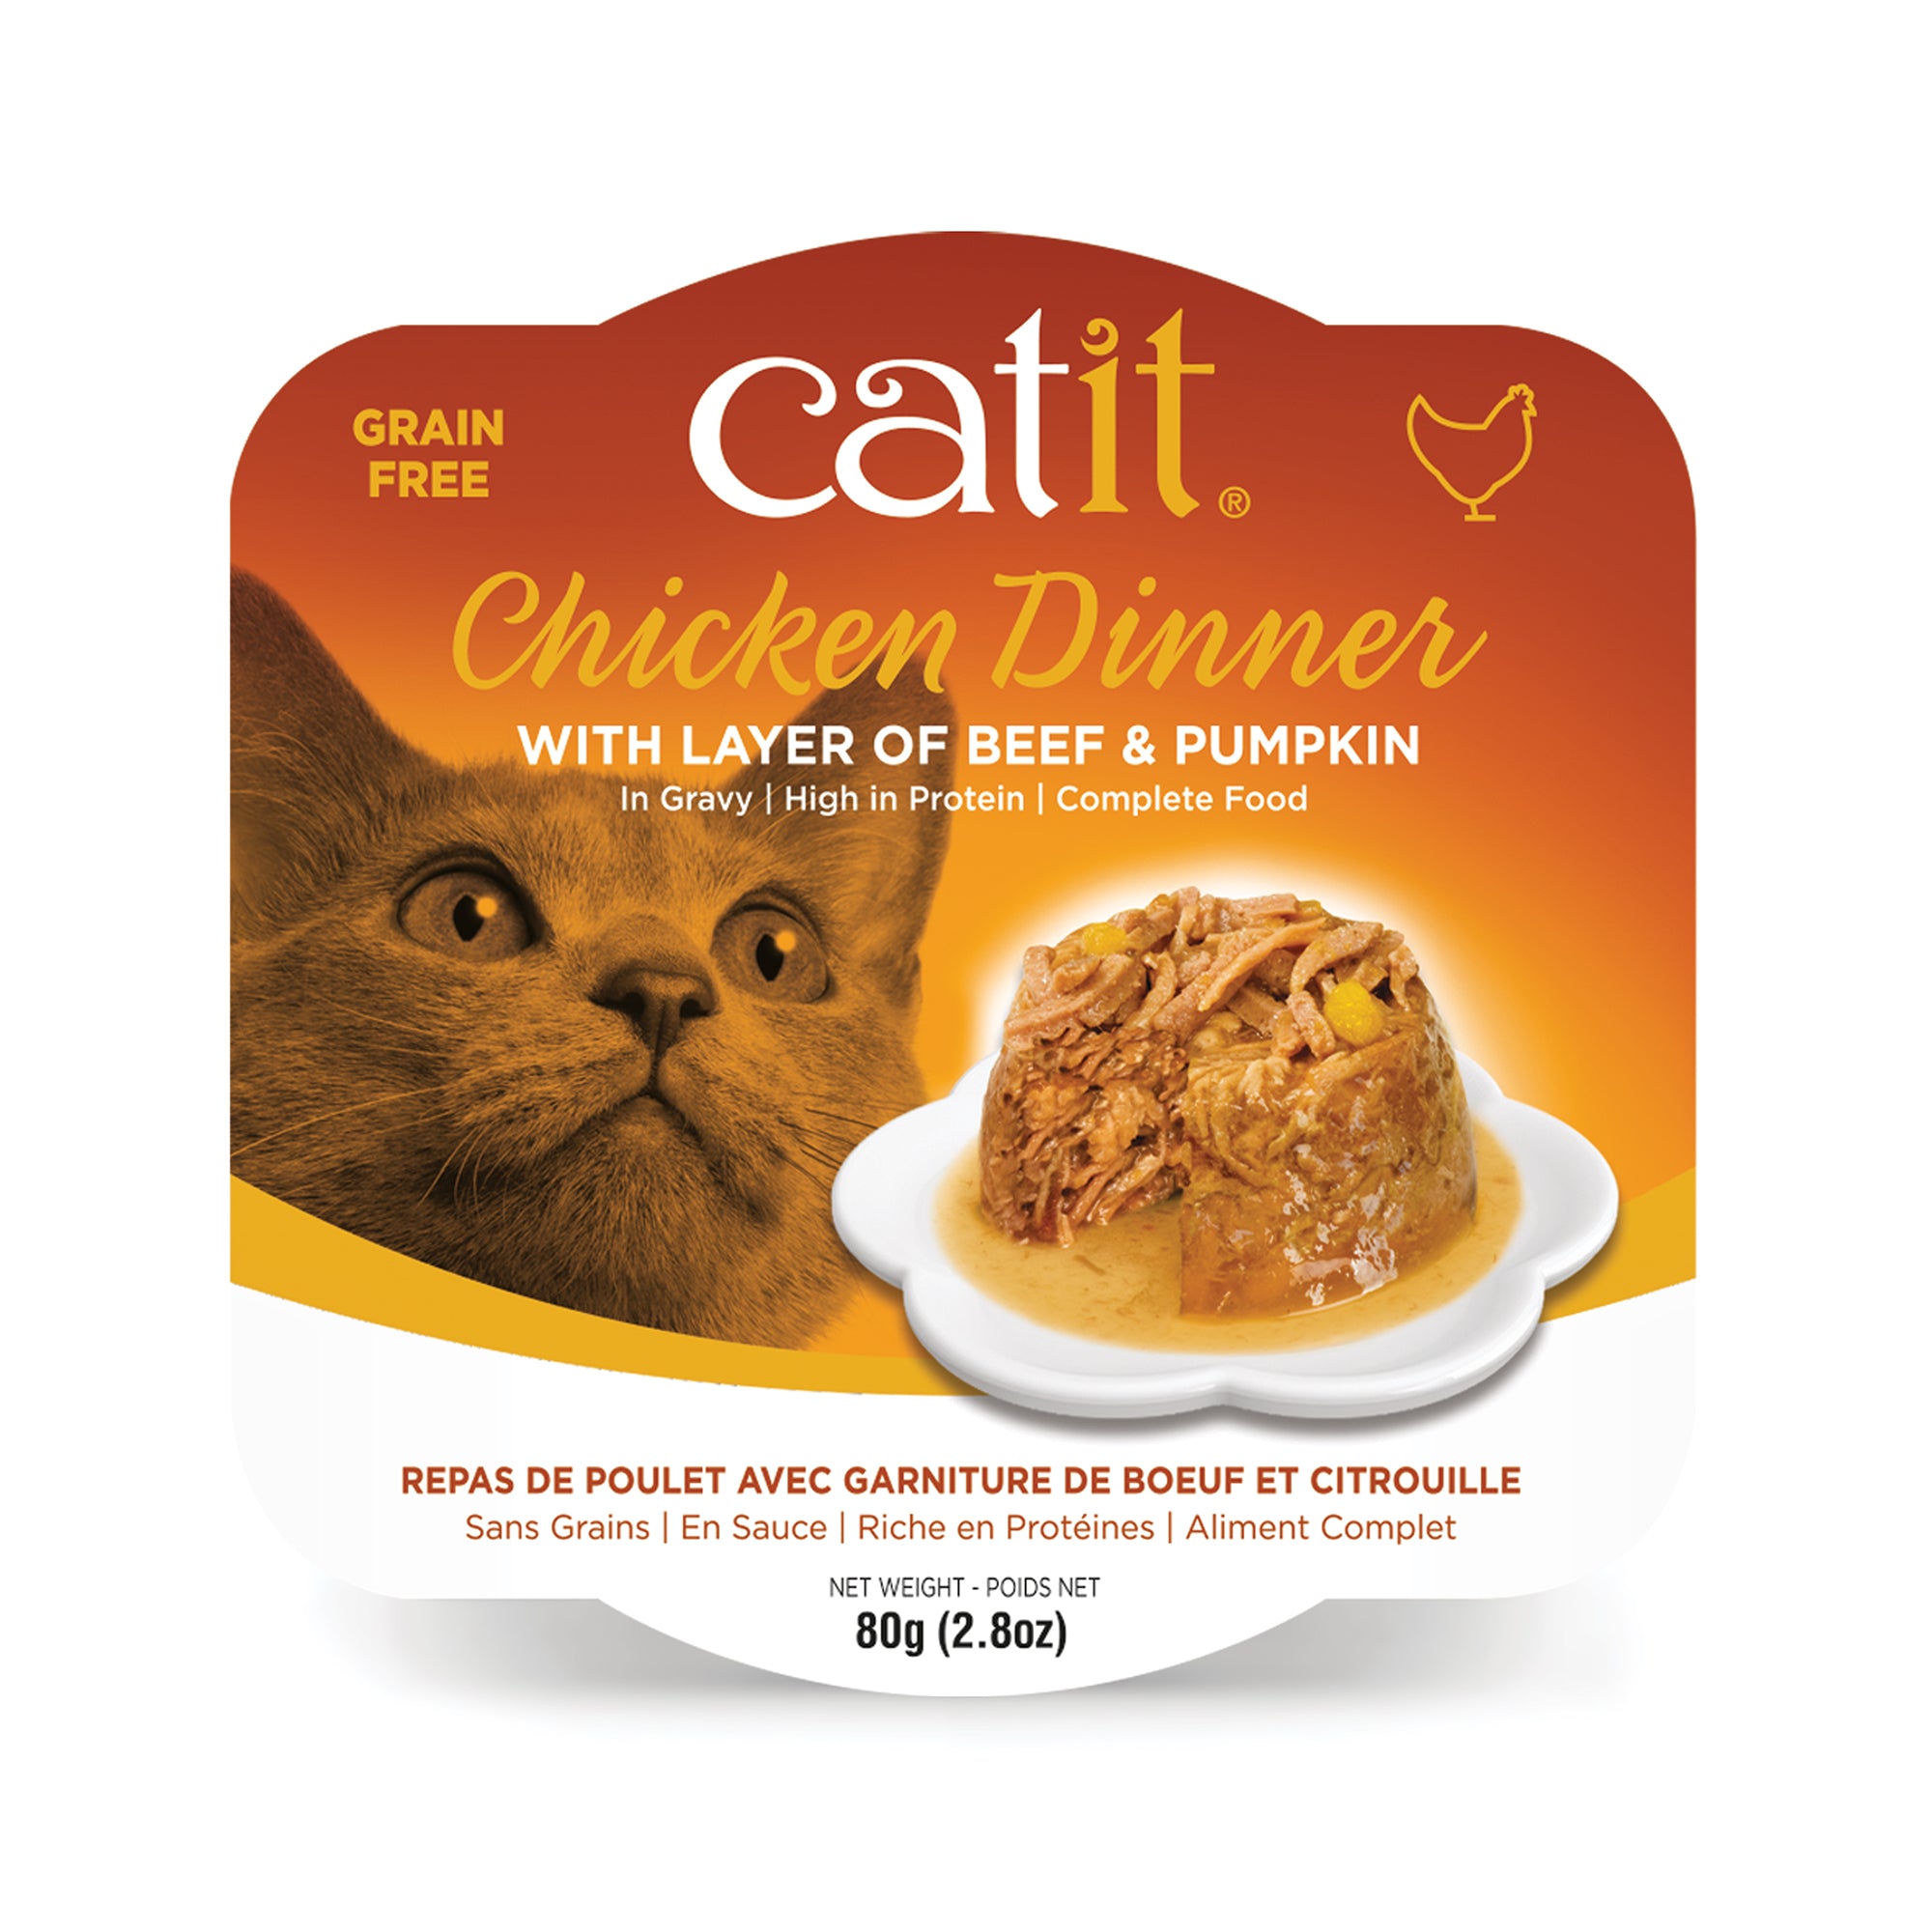 Catit Chicken Dinner with Beef & Pumpkin - 80 g (2.8 oz)